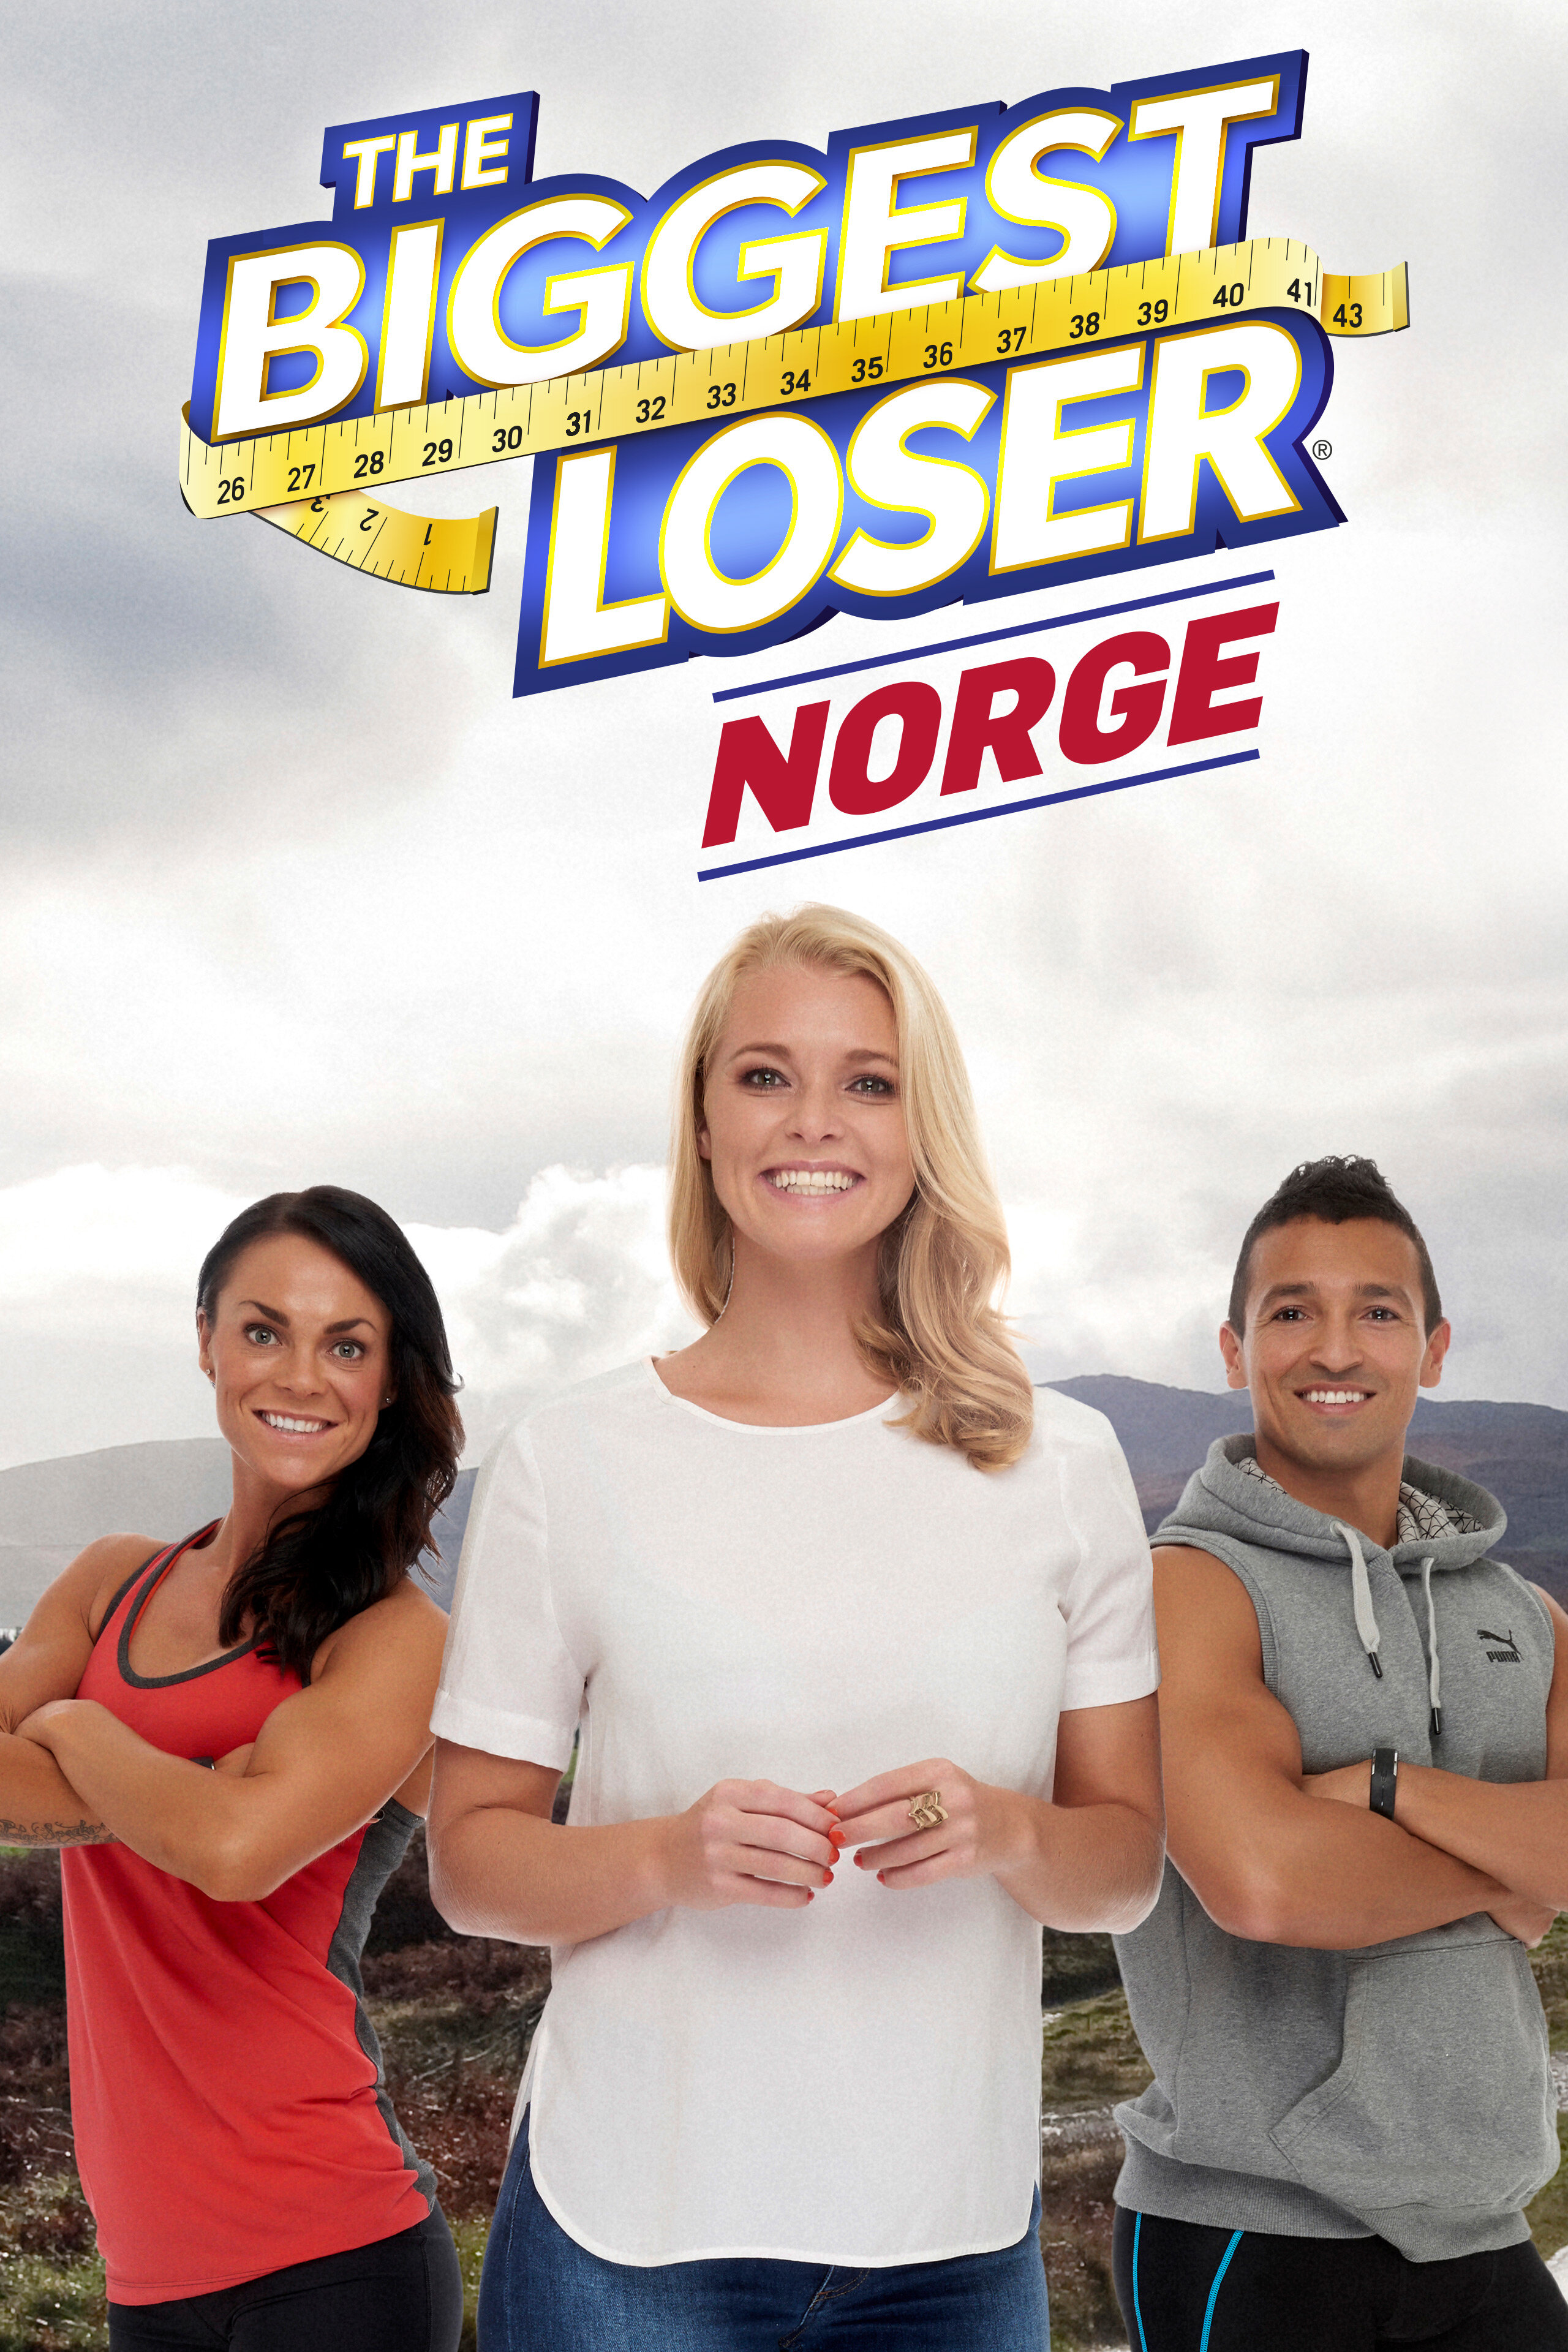 The Biggest Loser Norge ne zaman